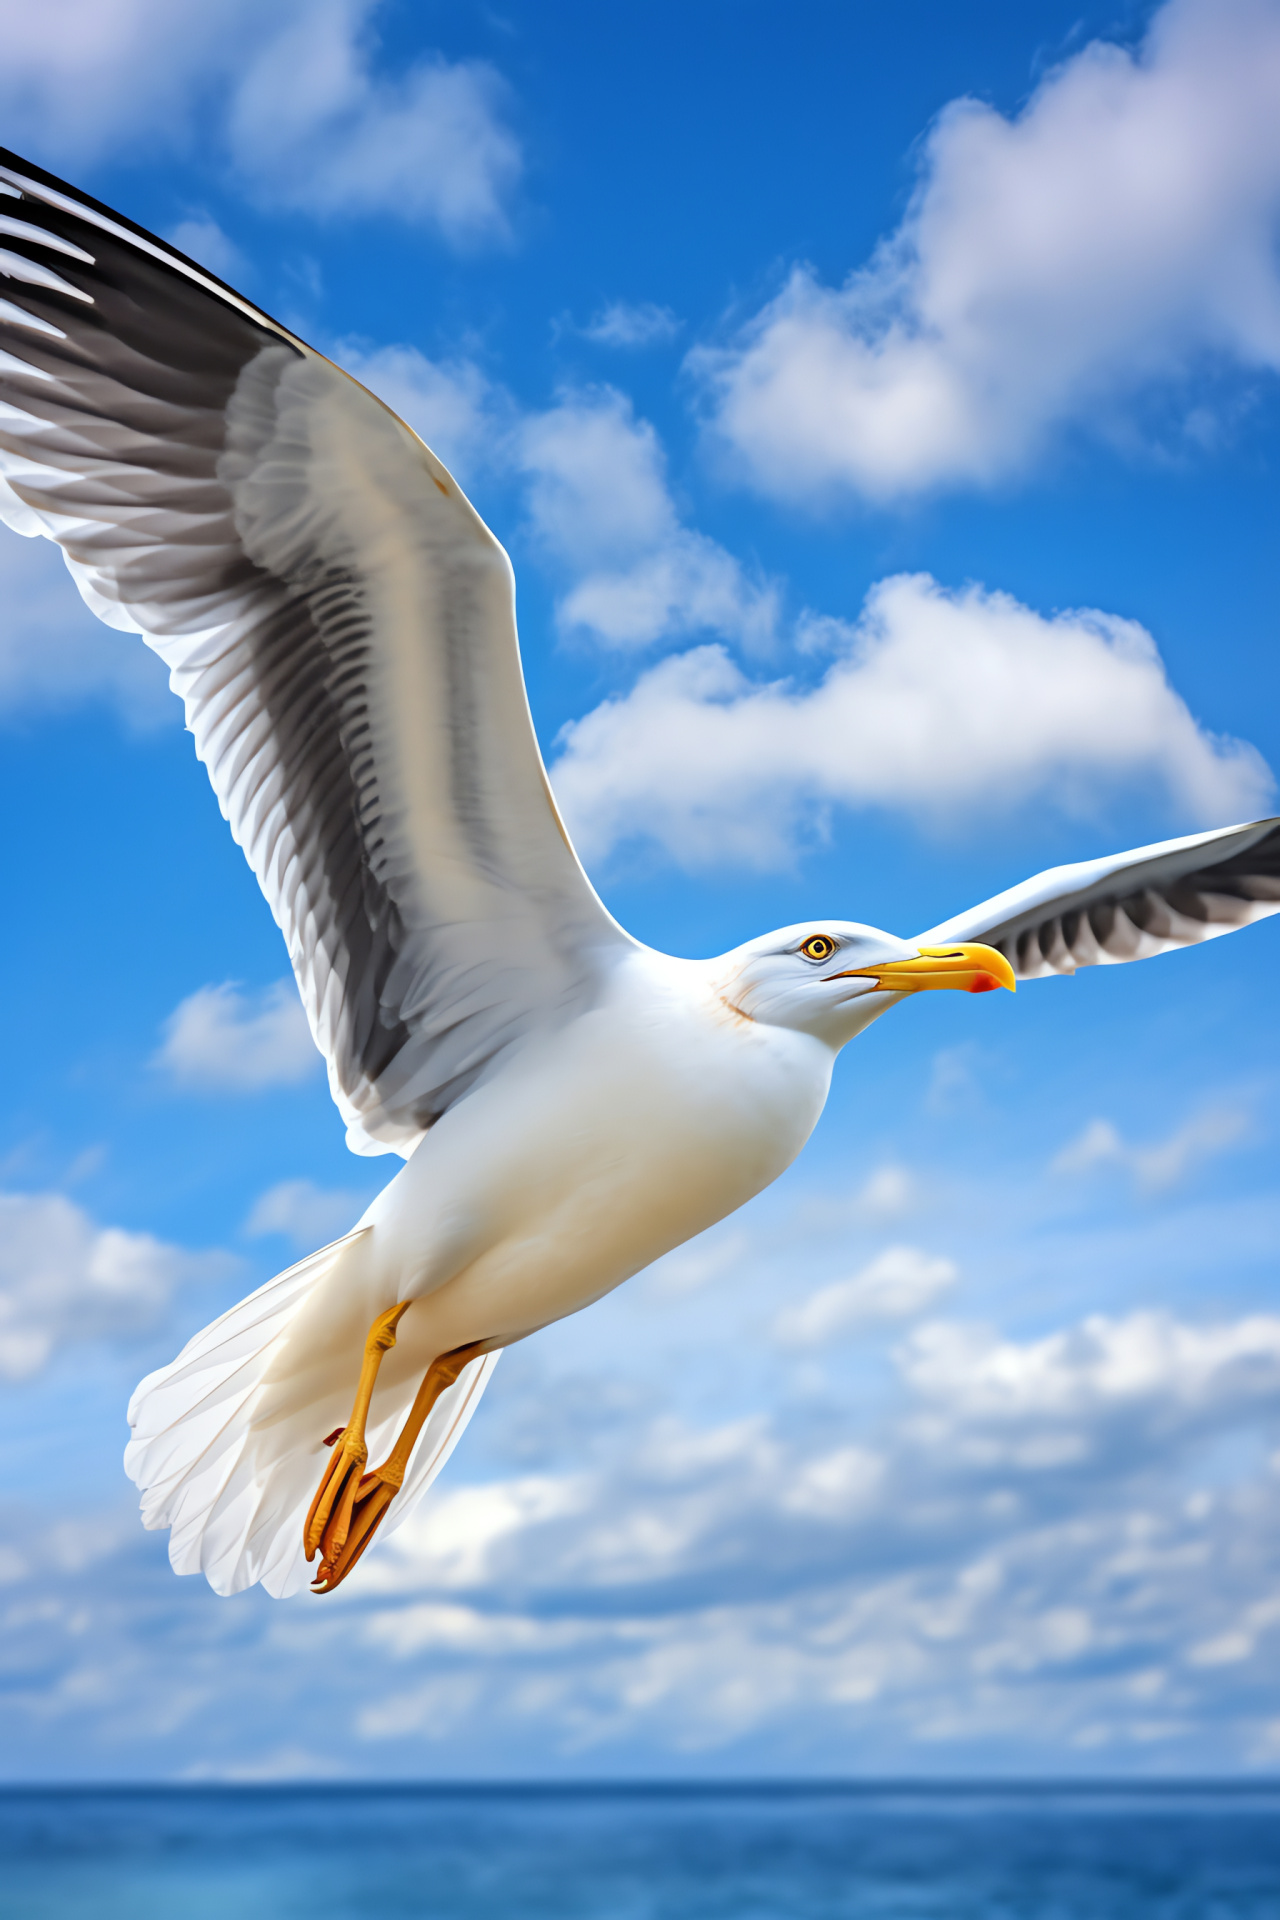 Seagull in flight, Sunlit feathers, Dynamic backdrop, Majestic bird, Glistening wings, HD Phone Wallpaper